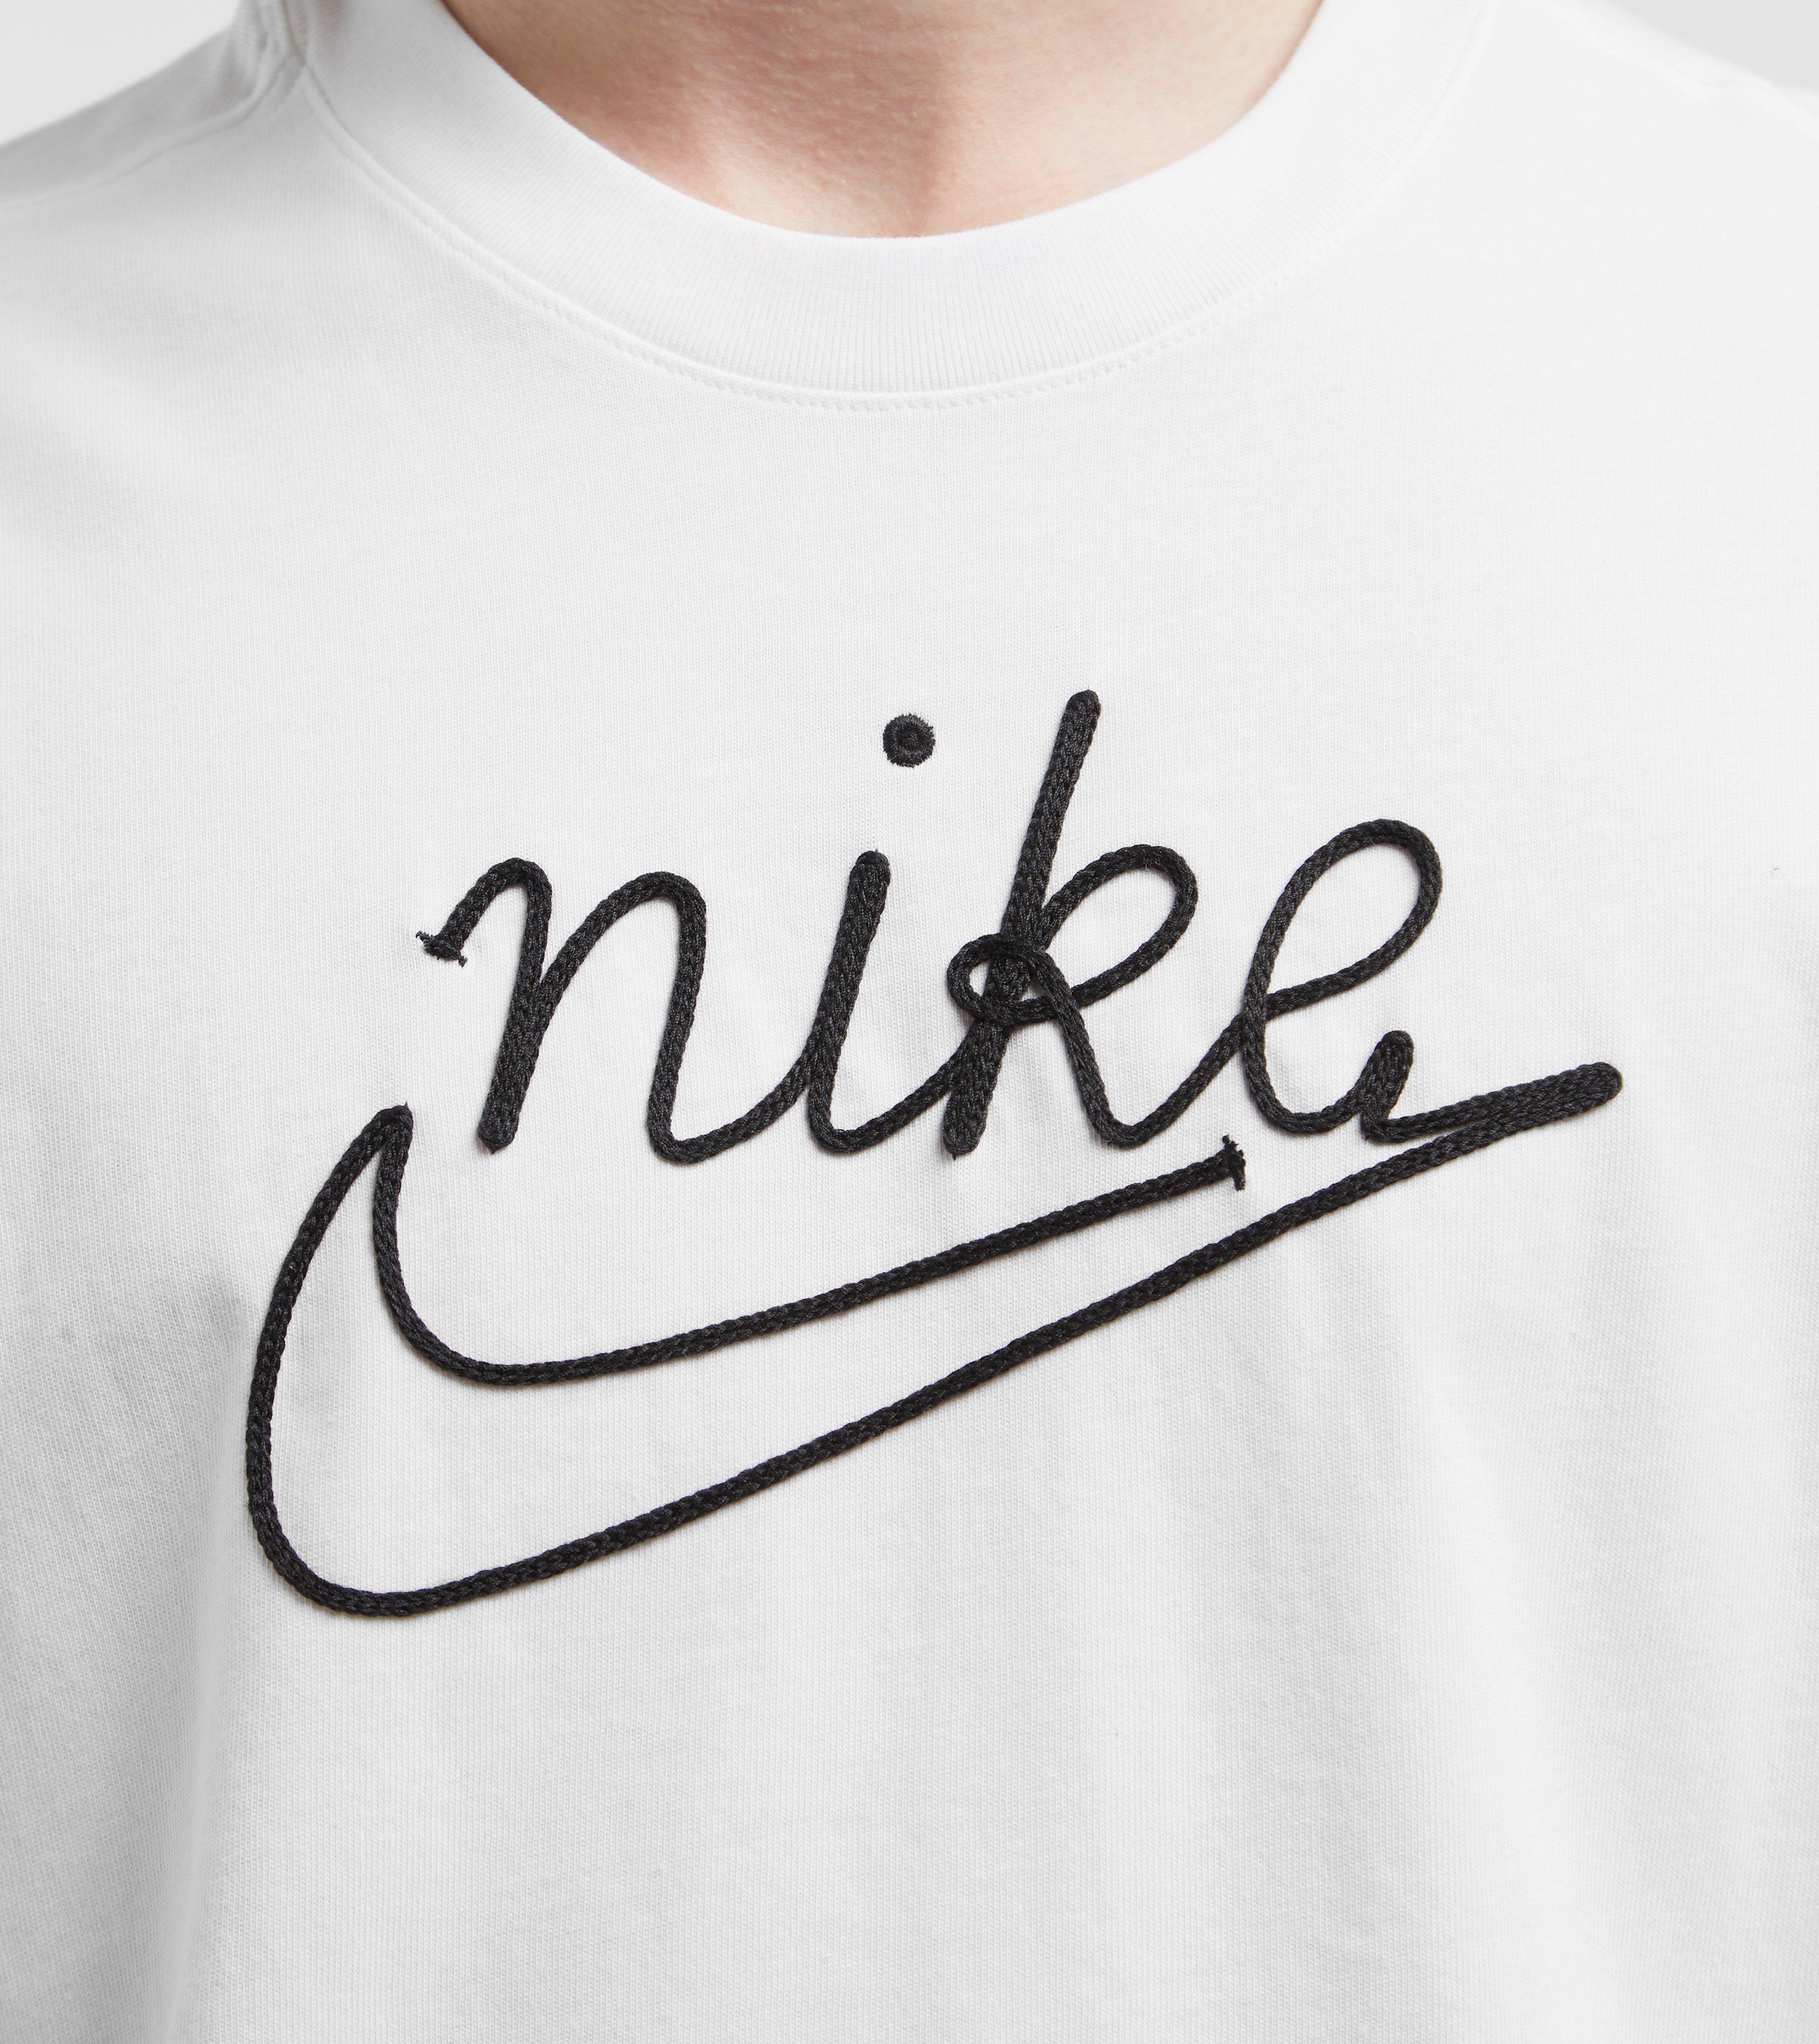 Nike Outline Short Sleeve T-shirt in White for Men - Lyst